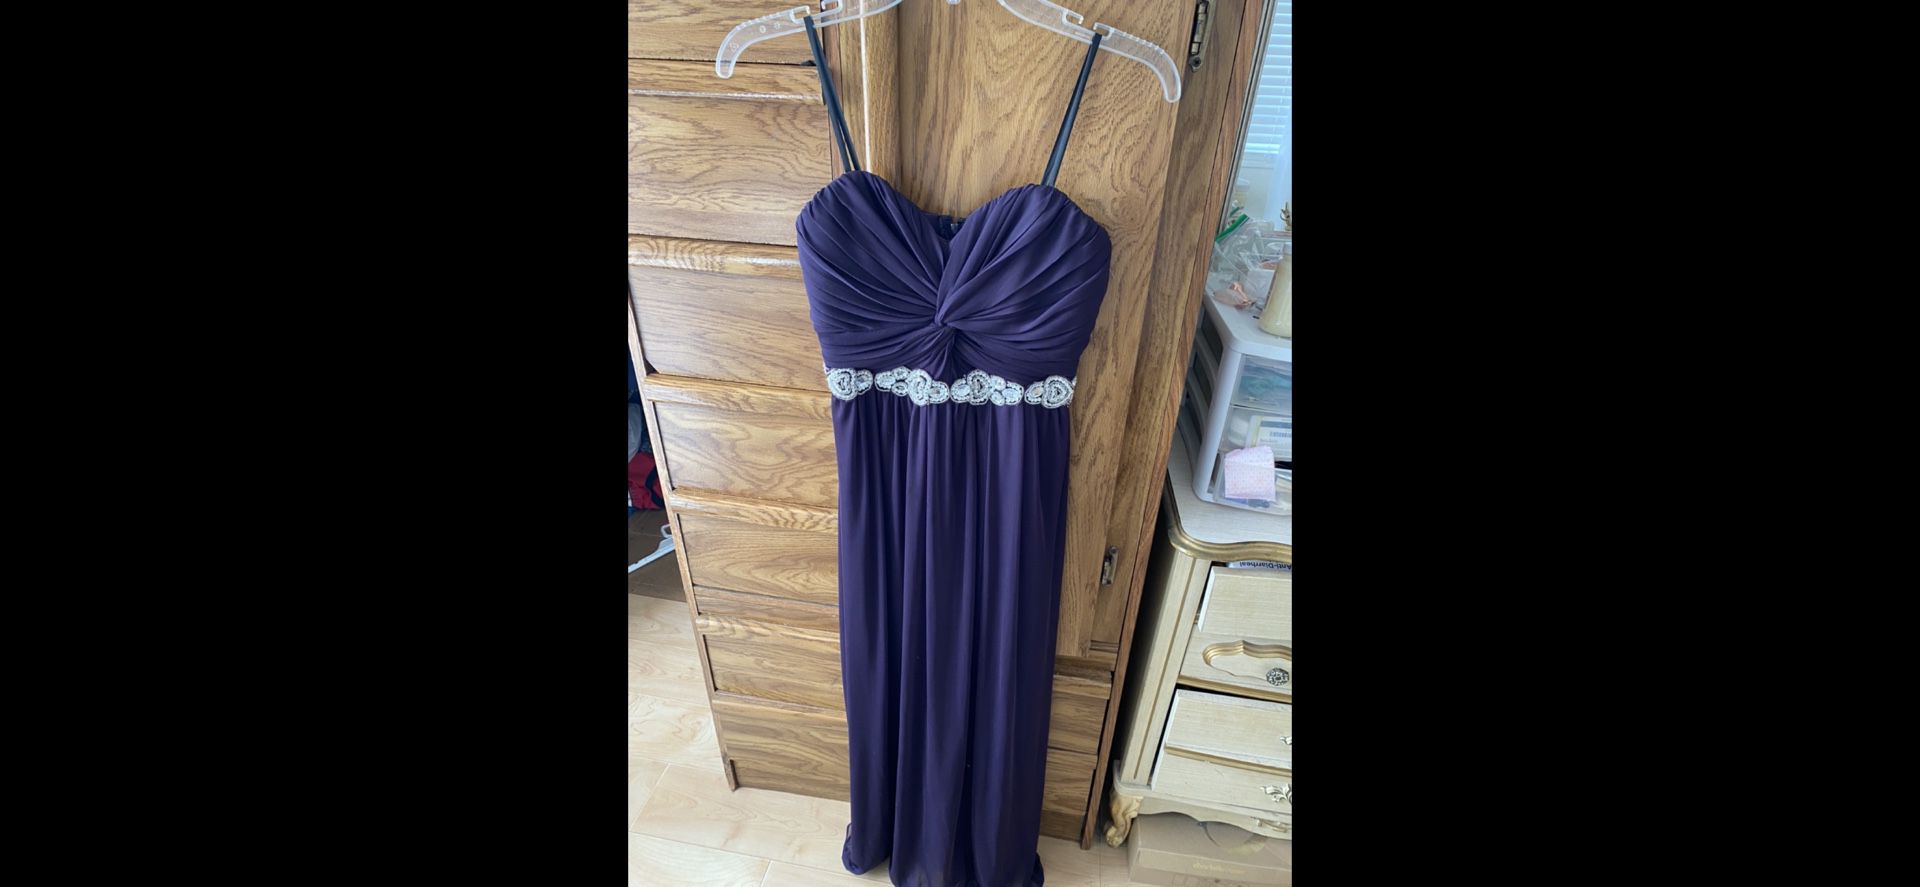 Formal purple dress size 7